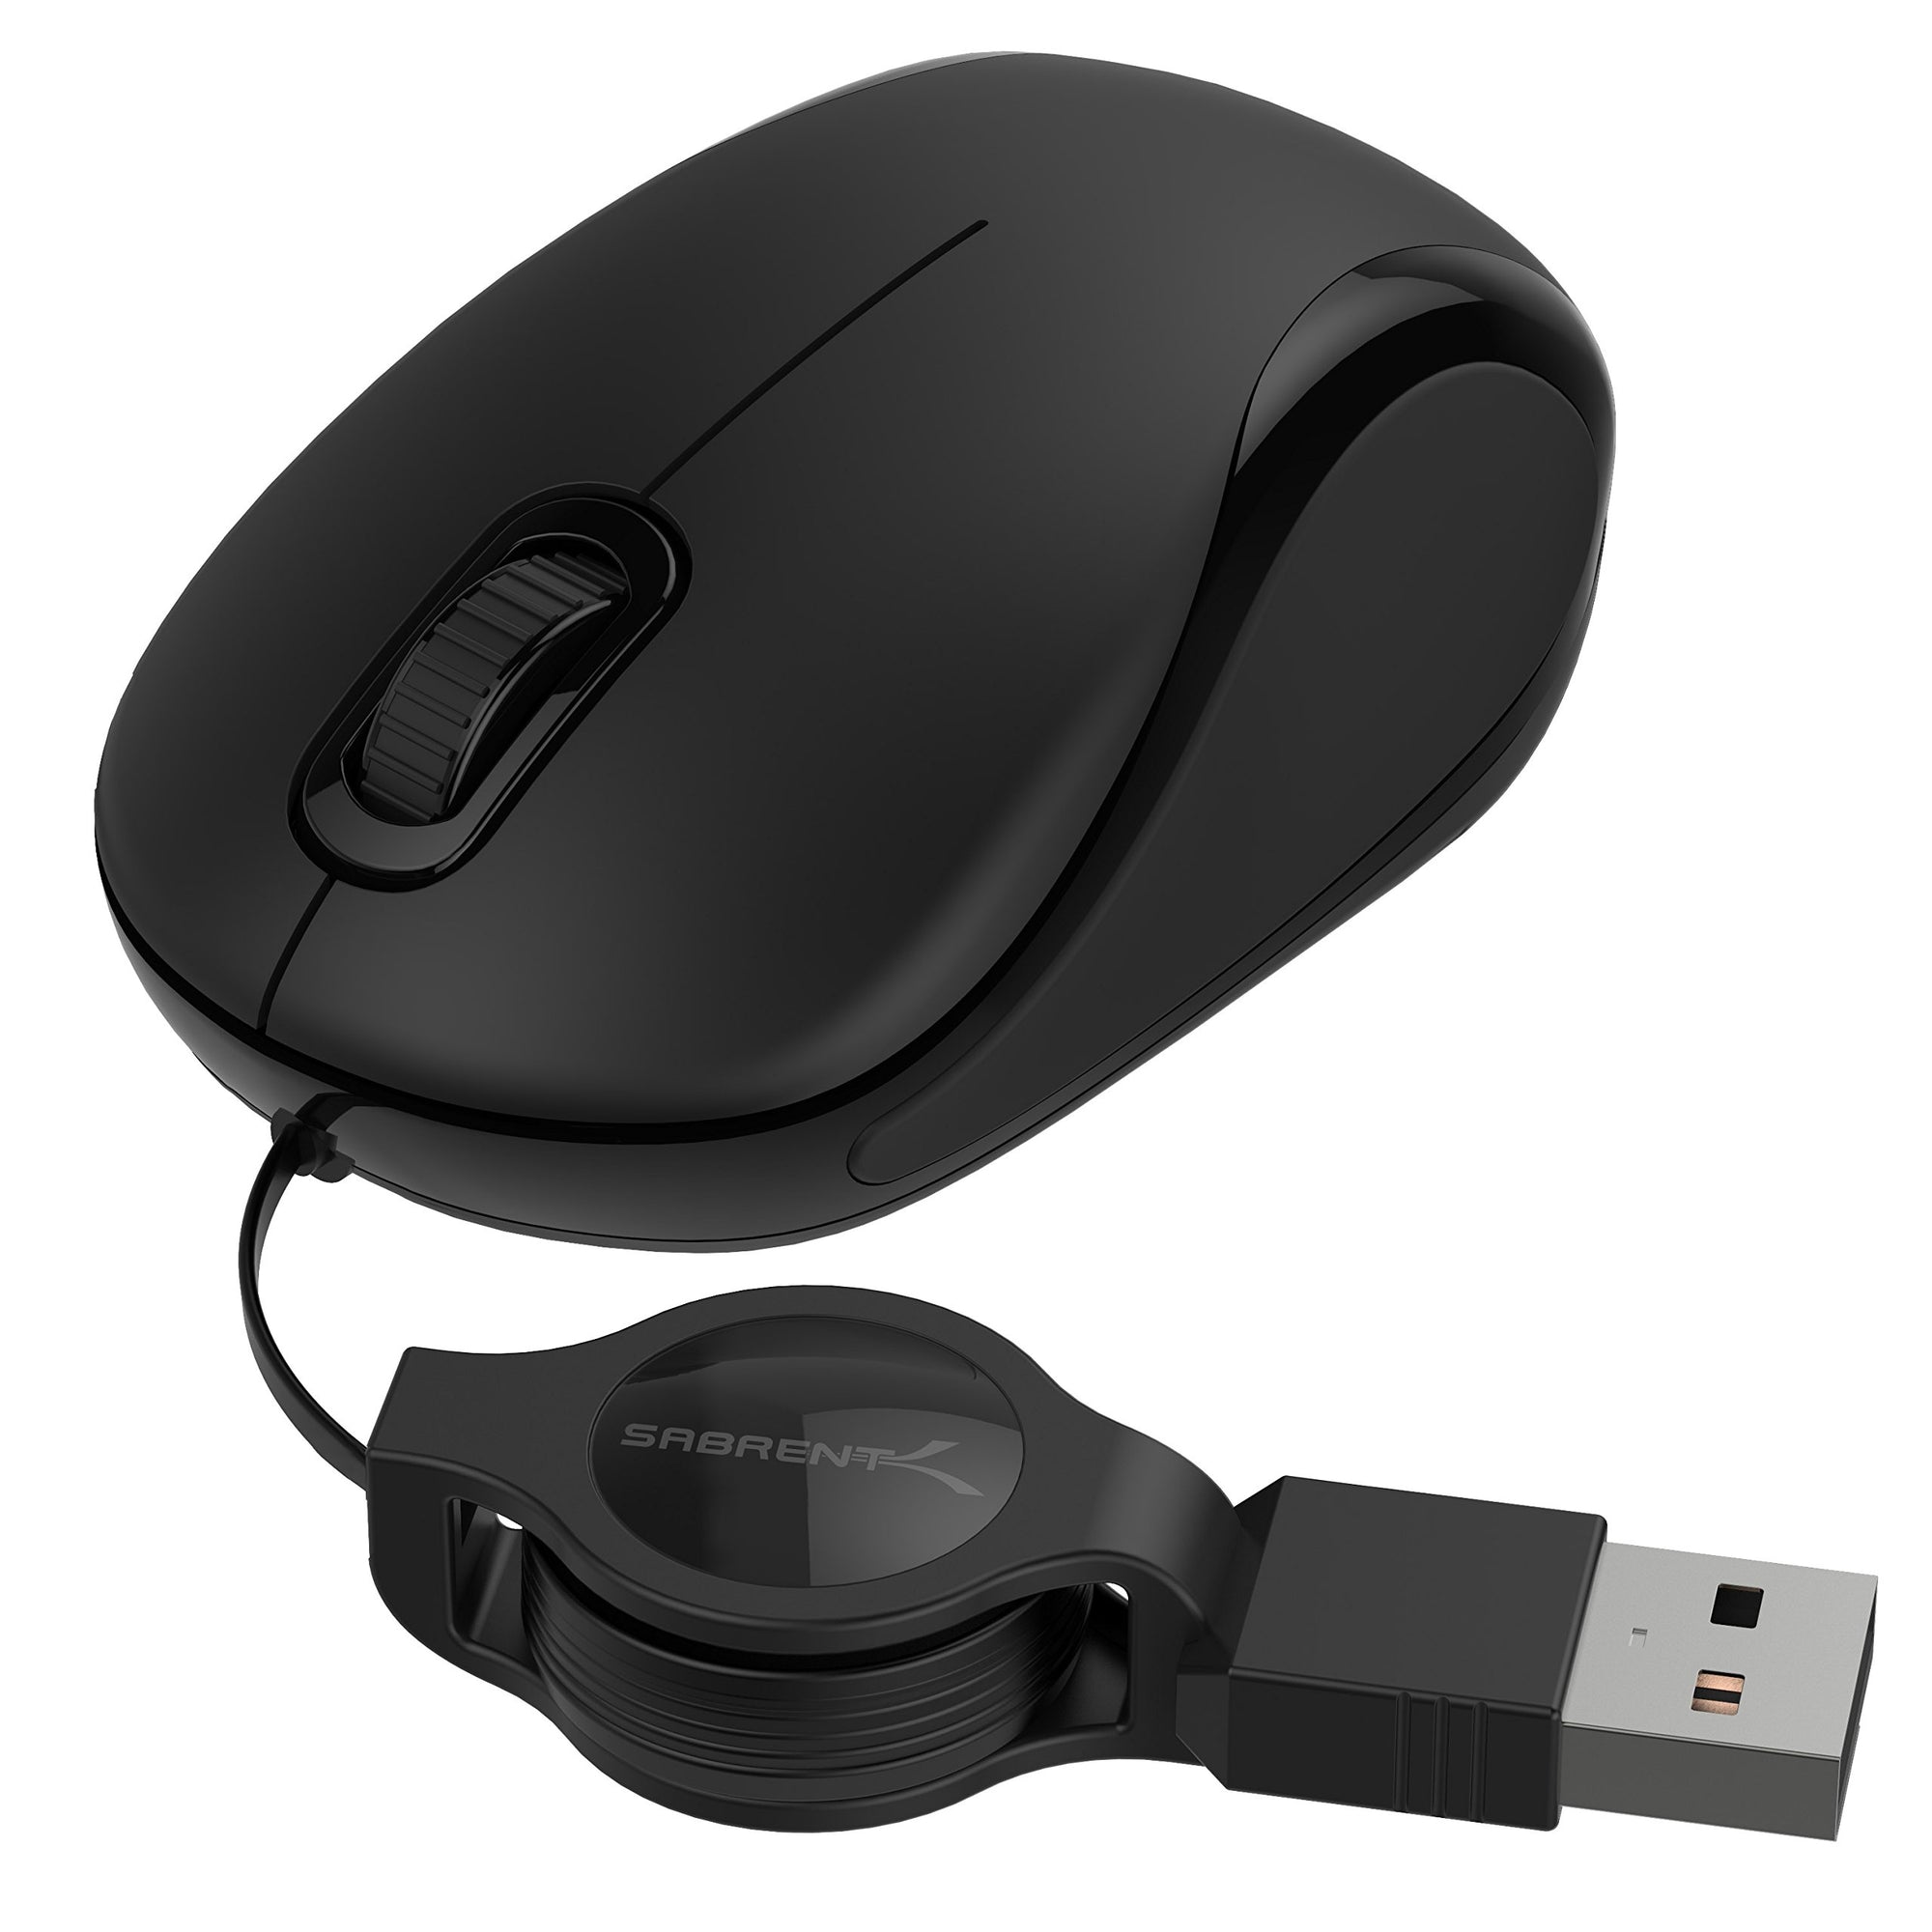 Mini USB Optical Mouse